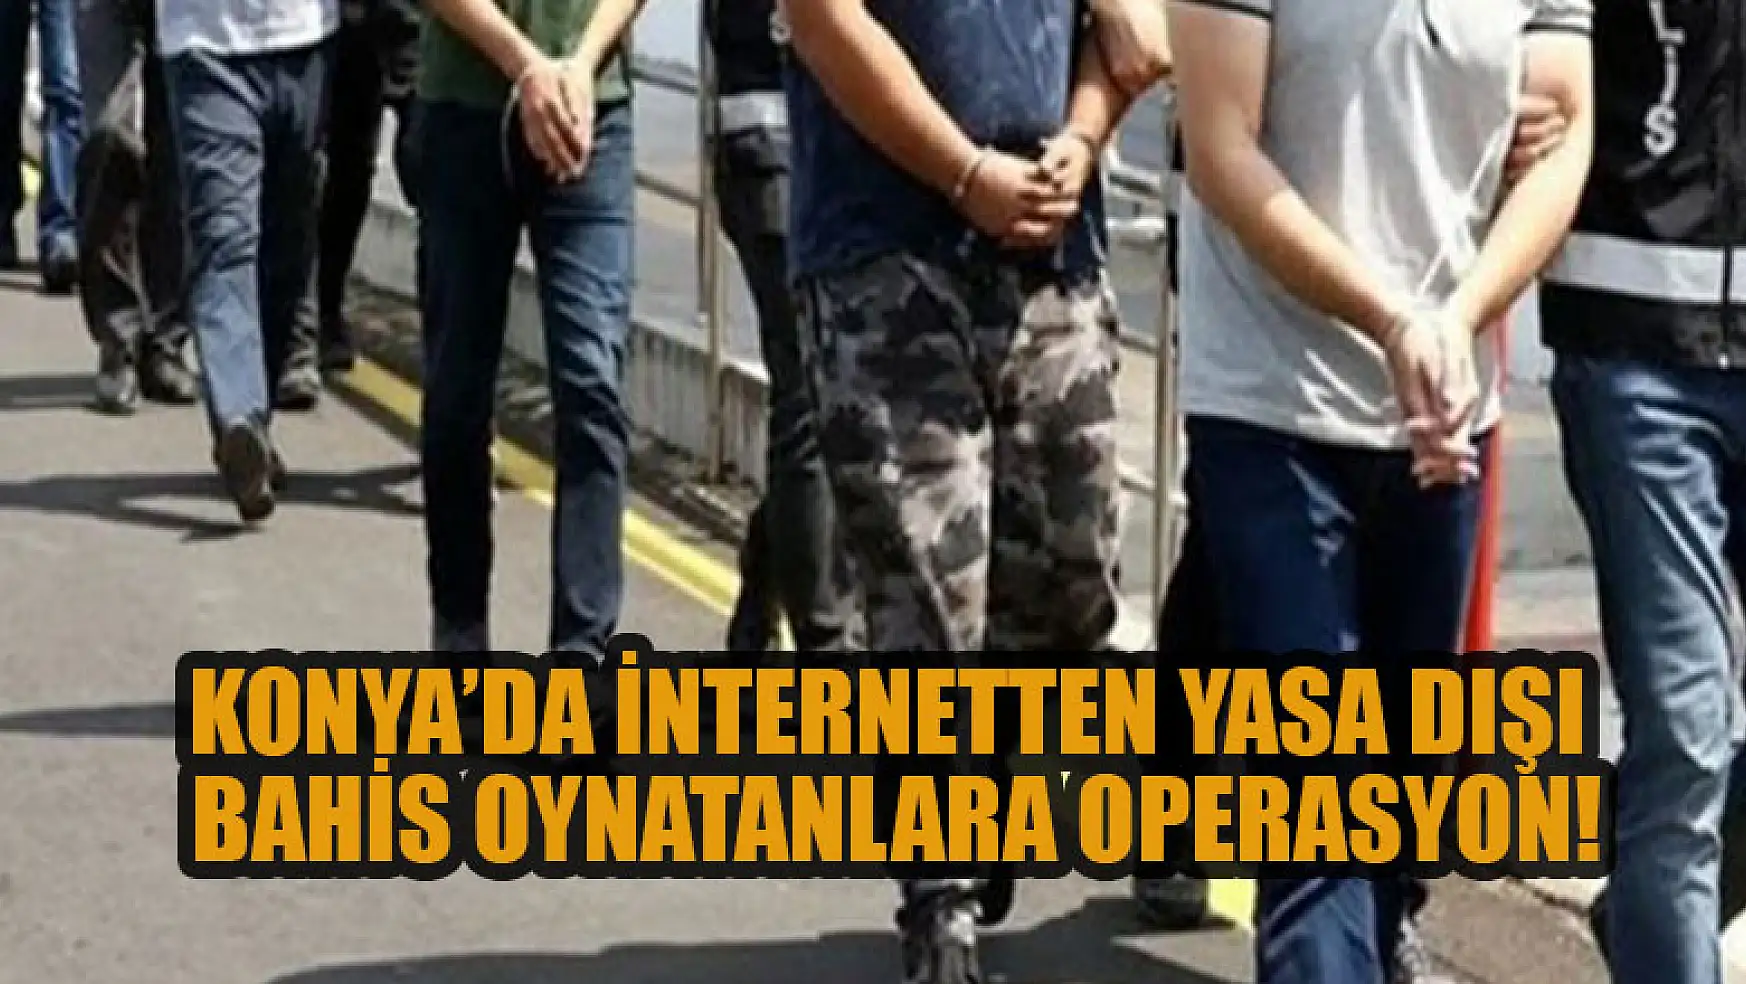 Konya'da internetten yasa dışı bahis oynatanlara operasyon!